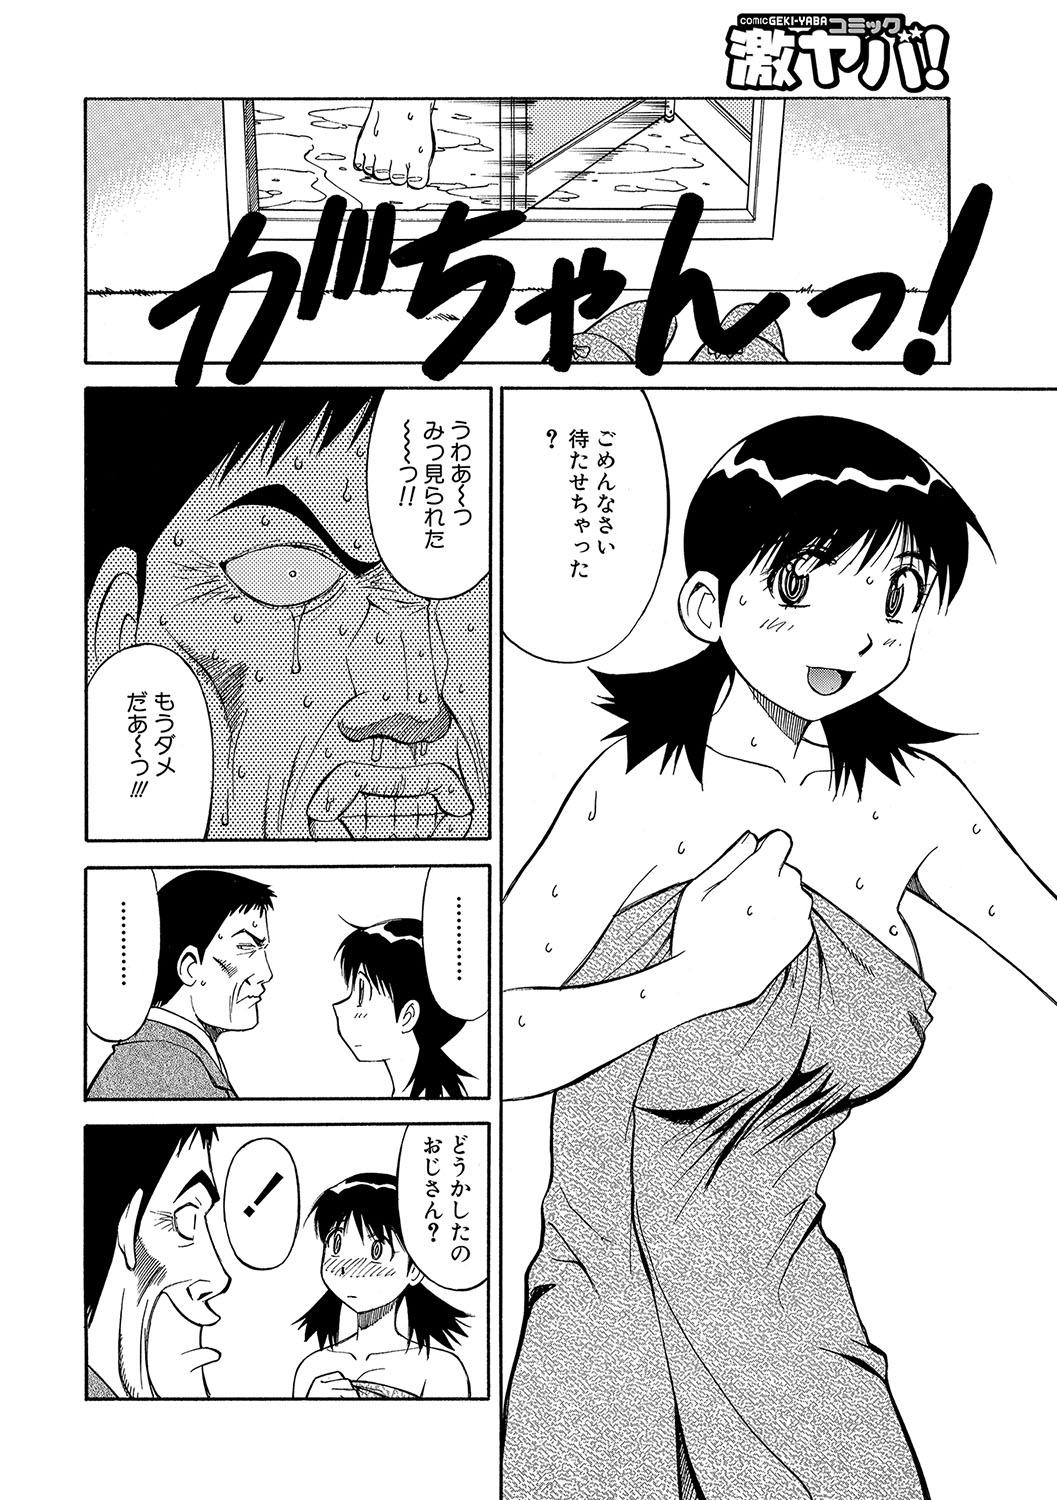 WEB Han Comic Geki Yaba! Vol.96 130